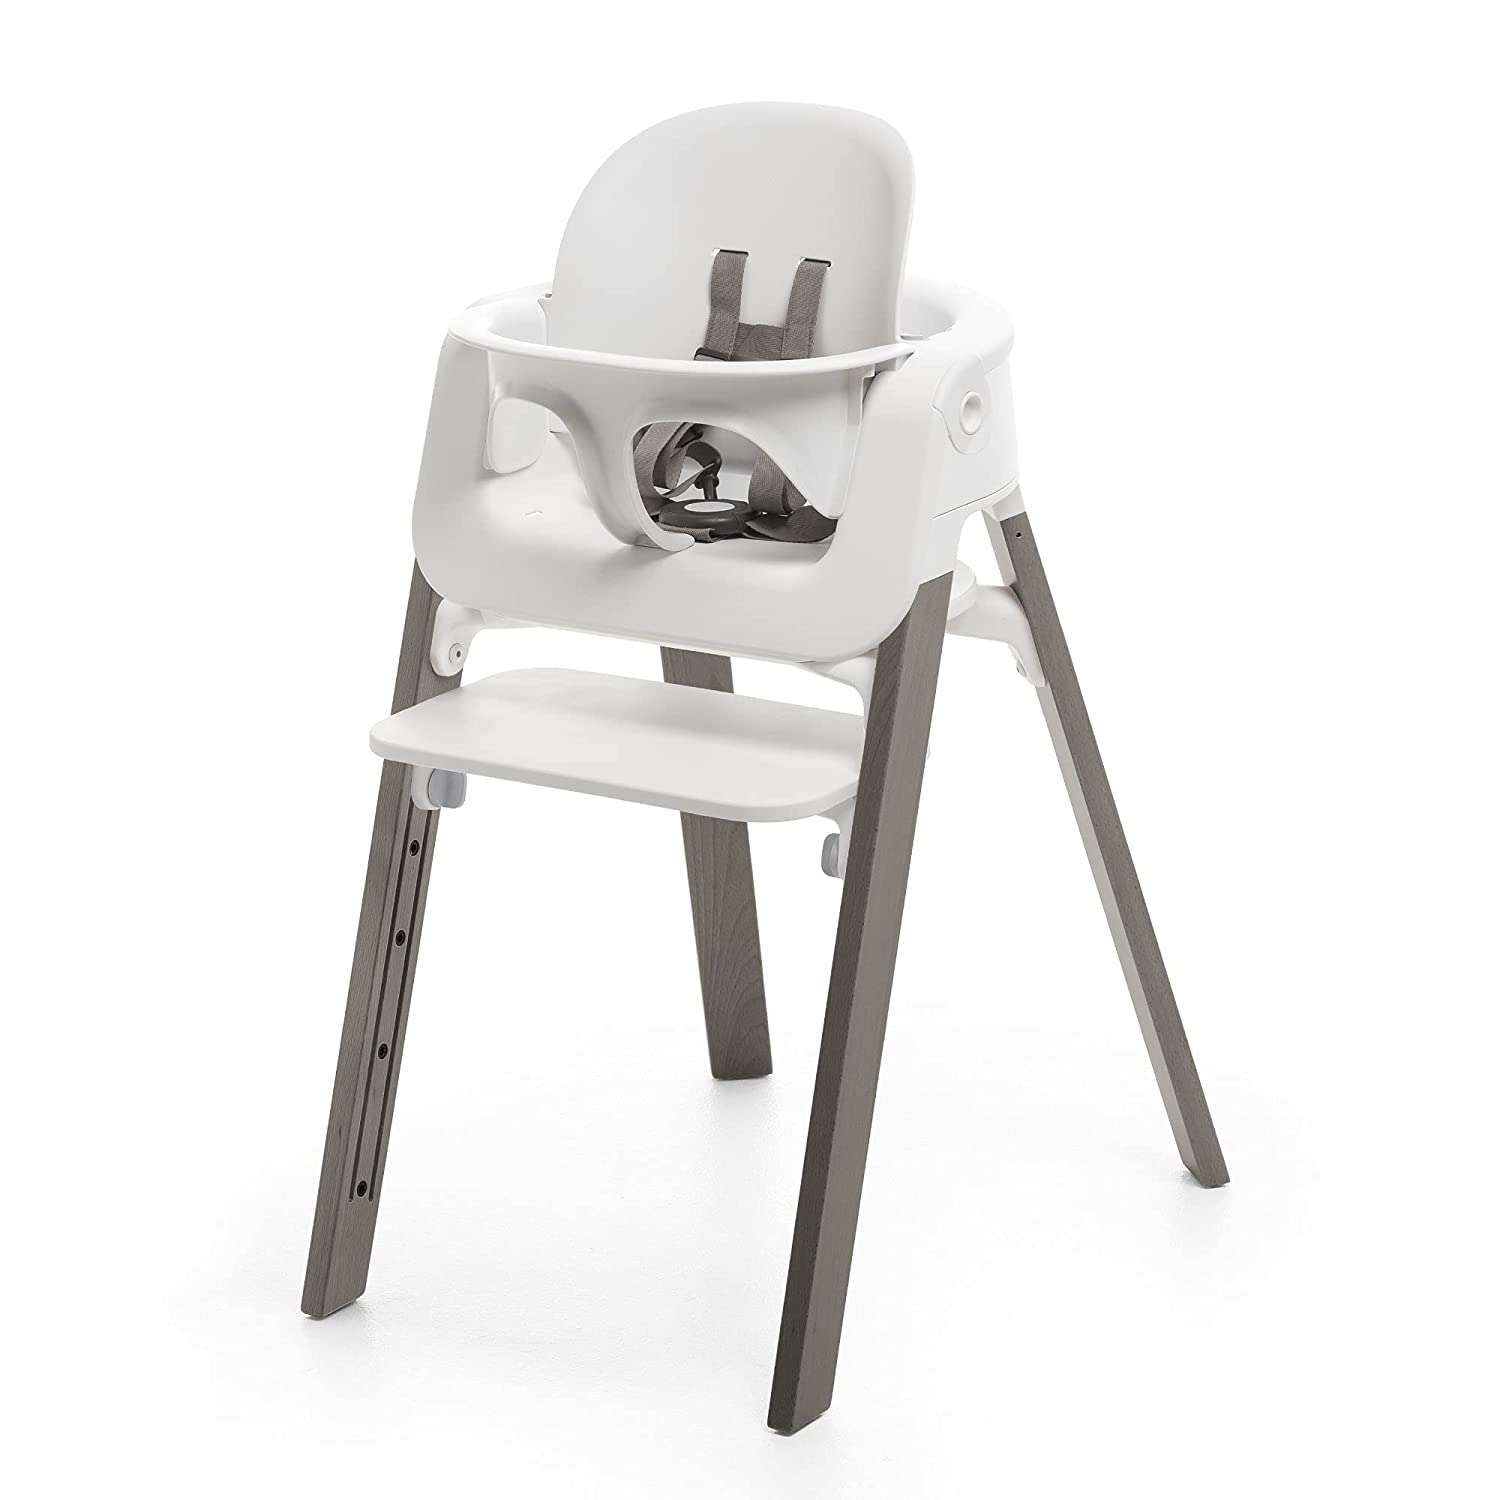 Детский стульчик-трансформер Stokke Steps, серый/белый